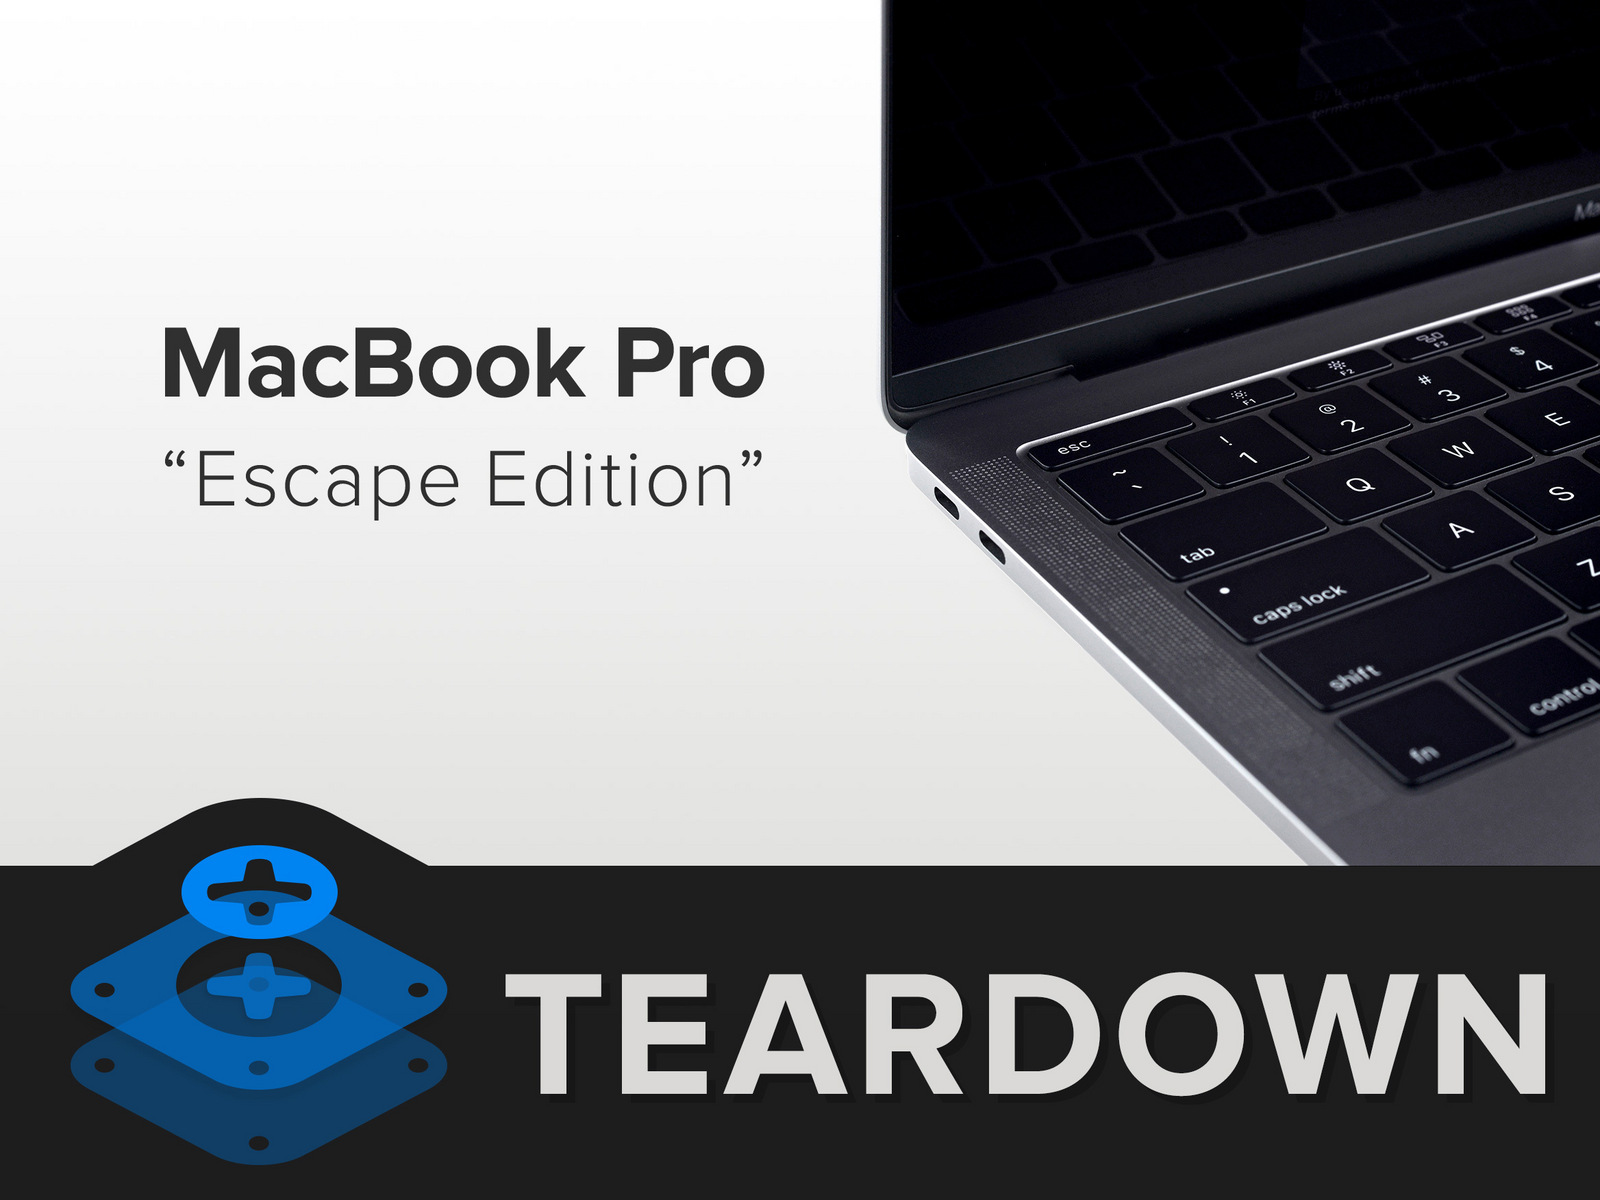 Новый MacBook Pro без тачбара признали непригодным для ремонта